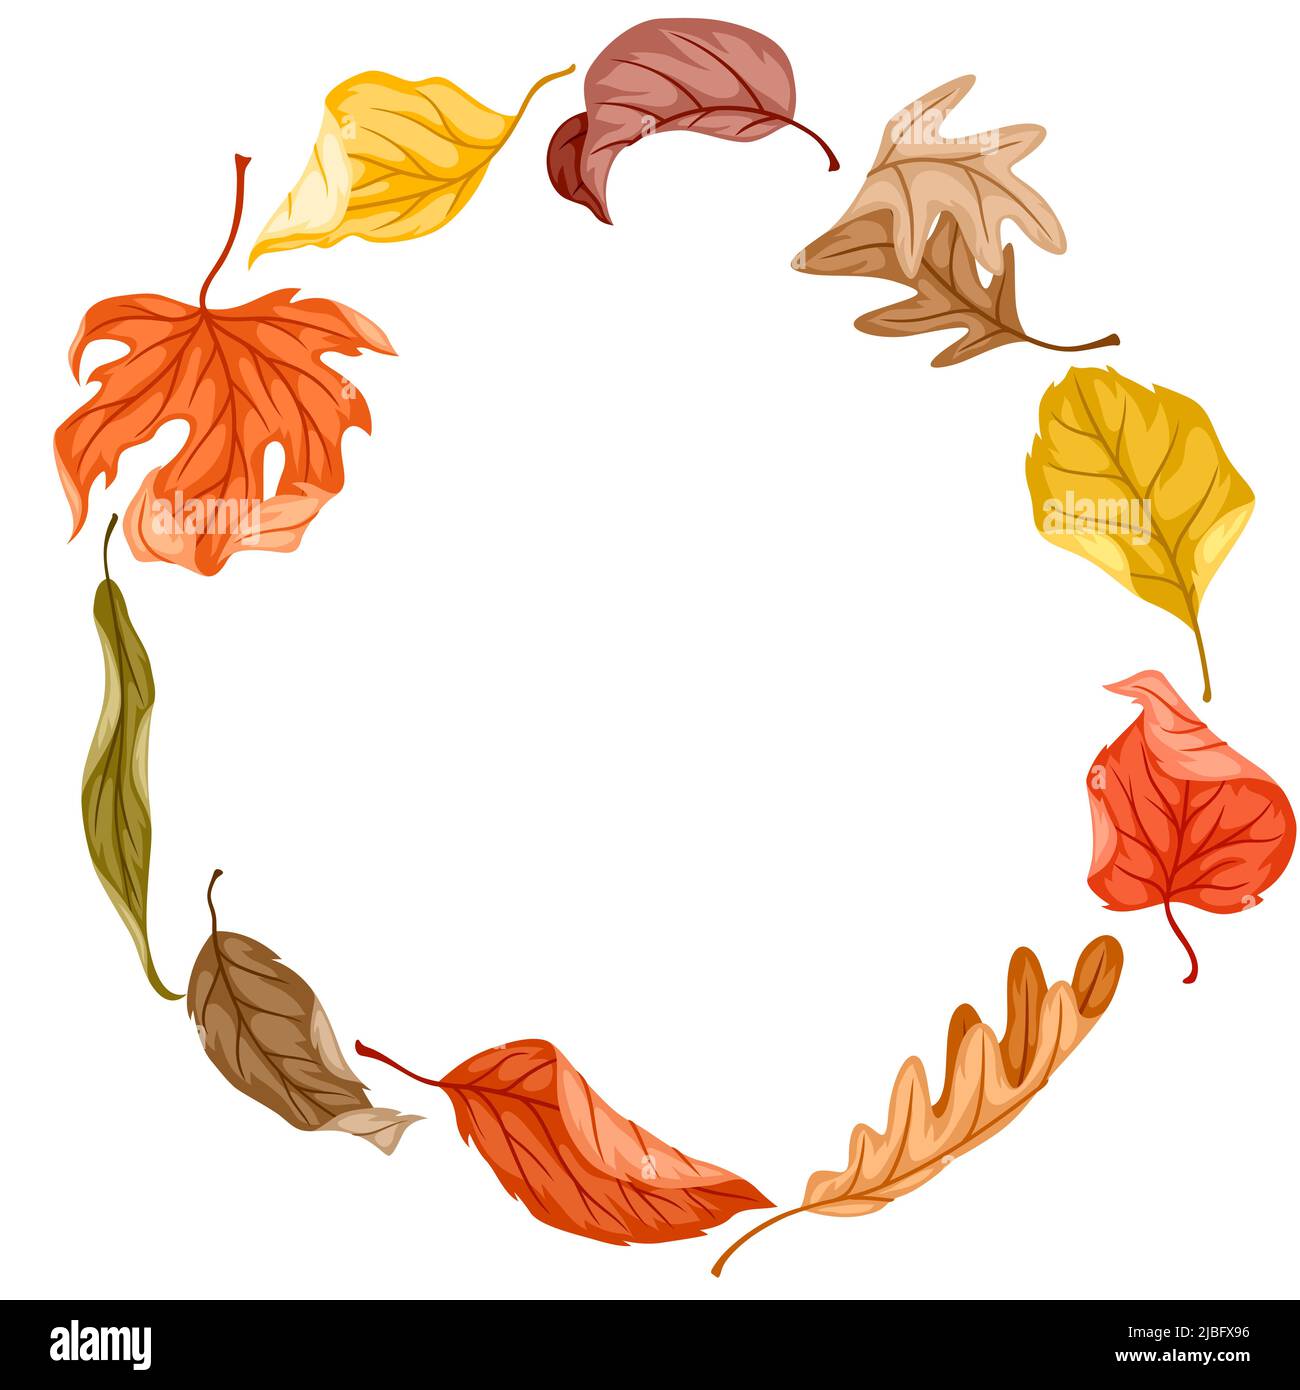 Rahmen mit Herbstlaub. Abbildung der fallenden Blätter. Stock Vektor